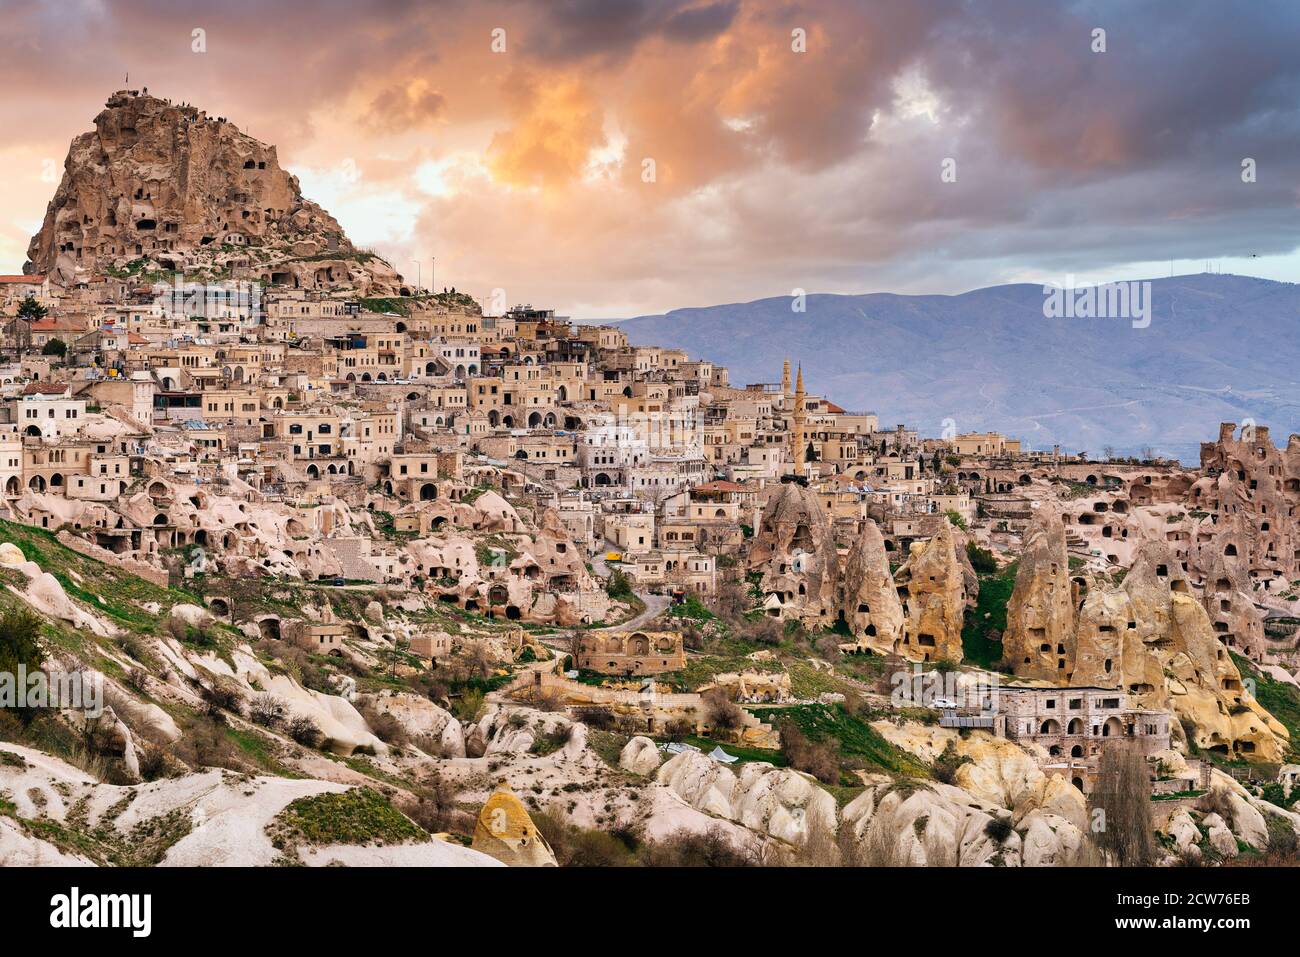 Uchisar Castle and town, Cappadocia, Central Anatolia, Turkey Stock Photo